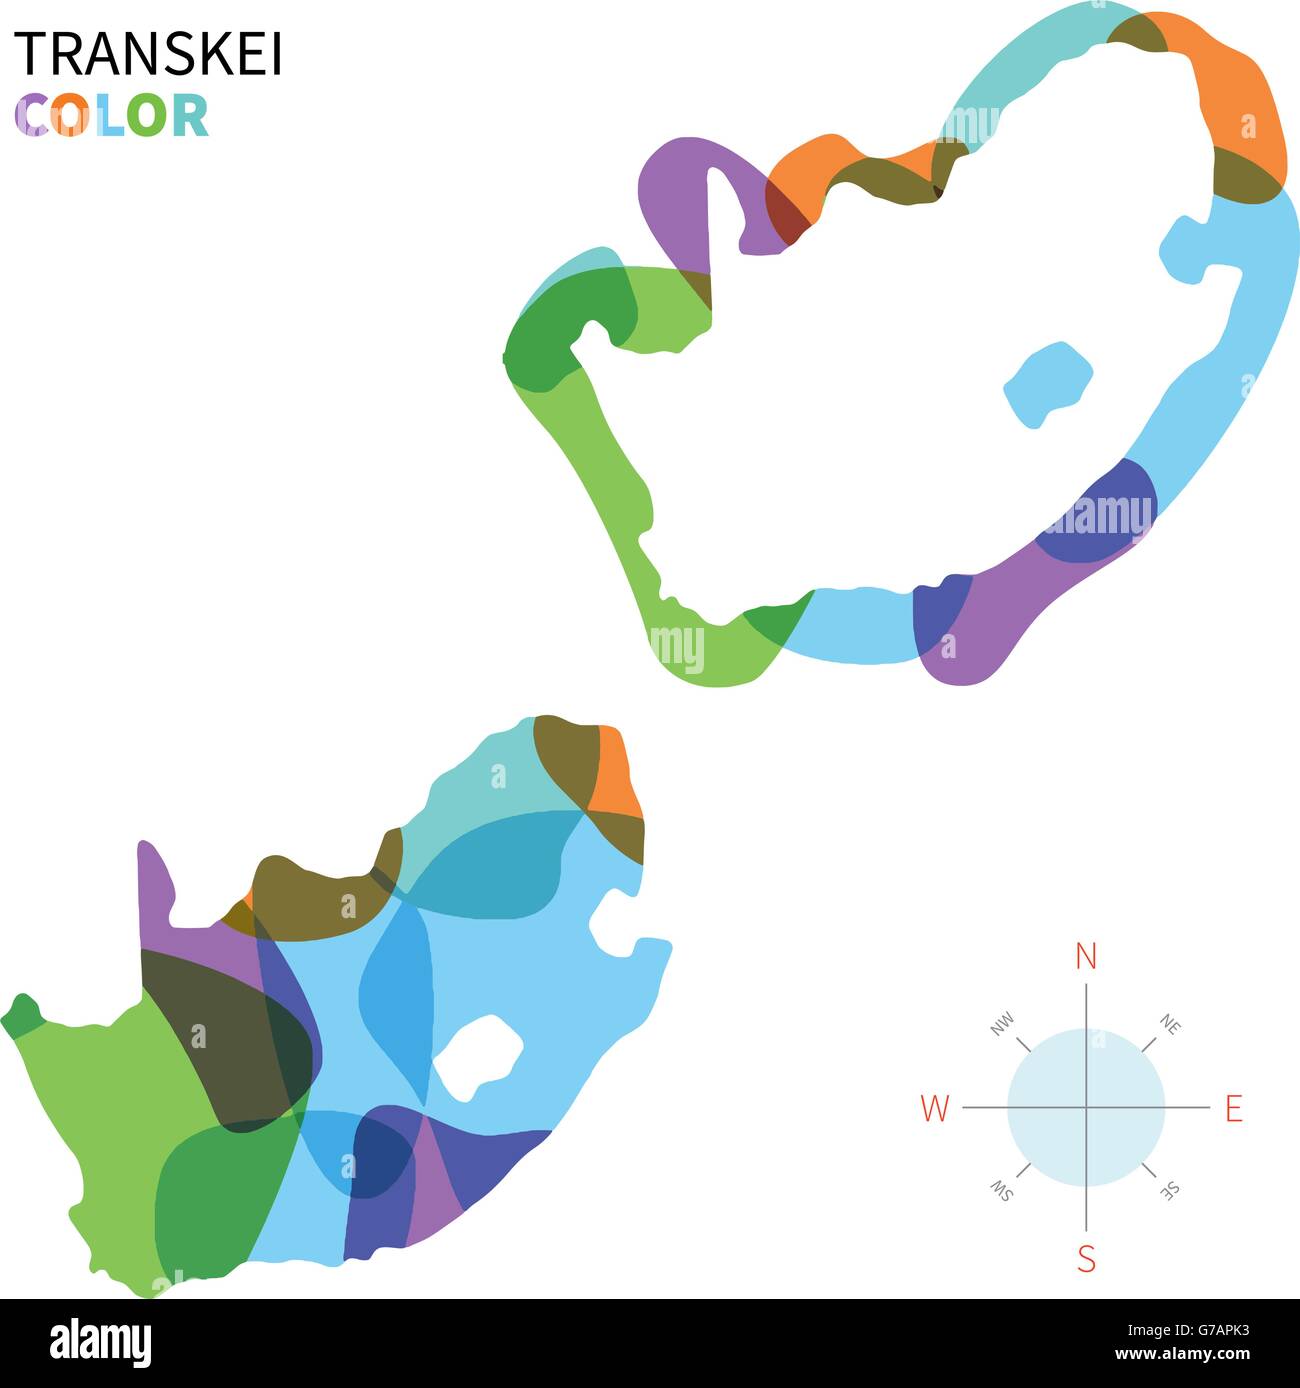 Vettore di astratta mappa a colori di Transkei Illustrazione Vettoriale